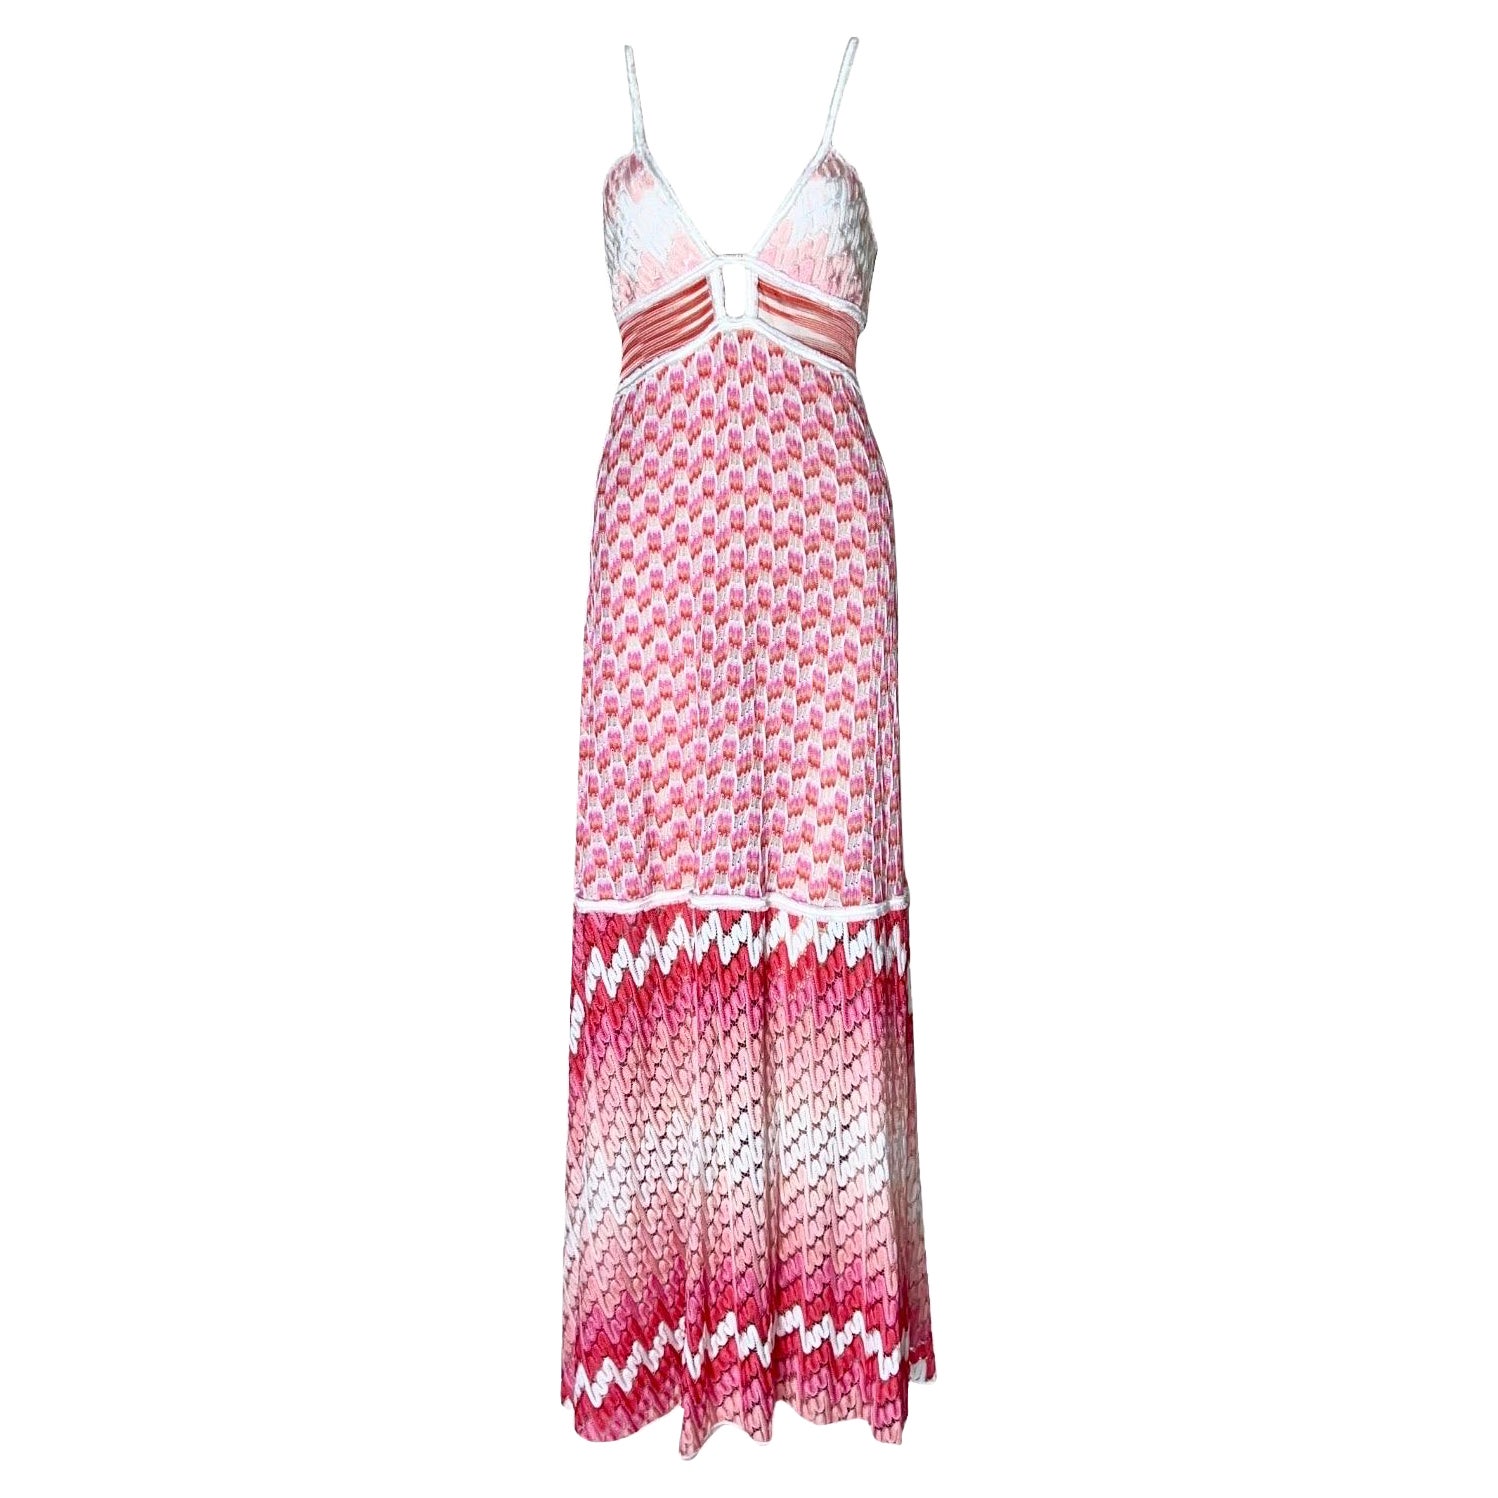 Missoni Crochet Knit Maxi Dress Pink Shades with Peek-a-boo Detail 42